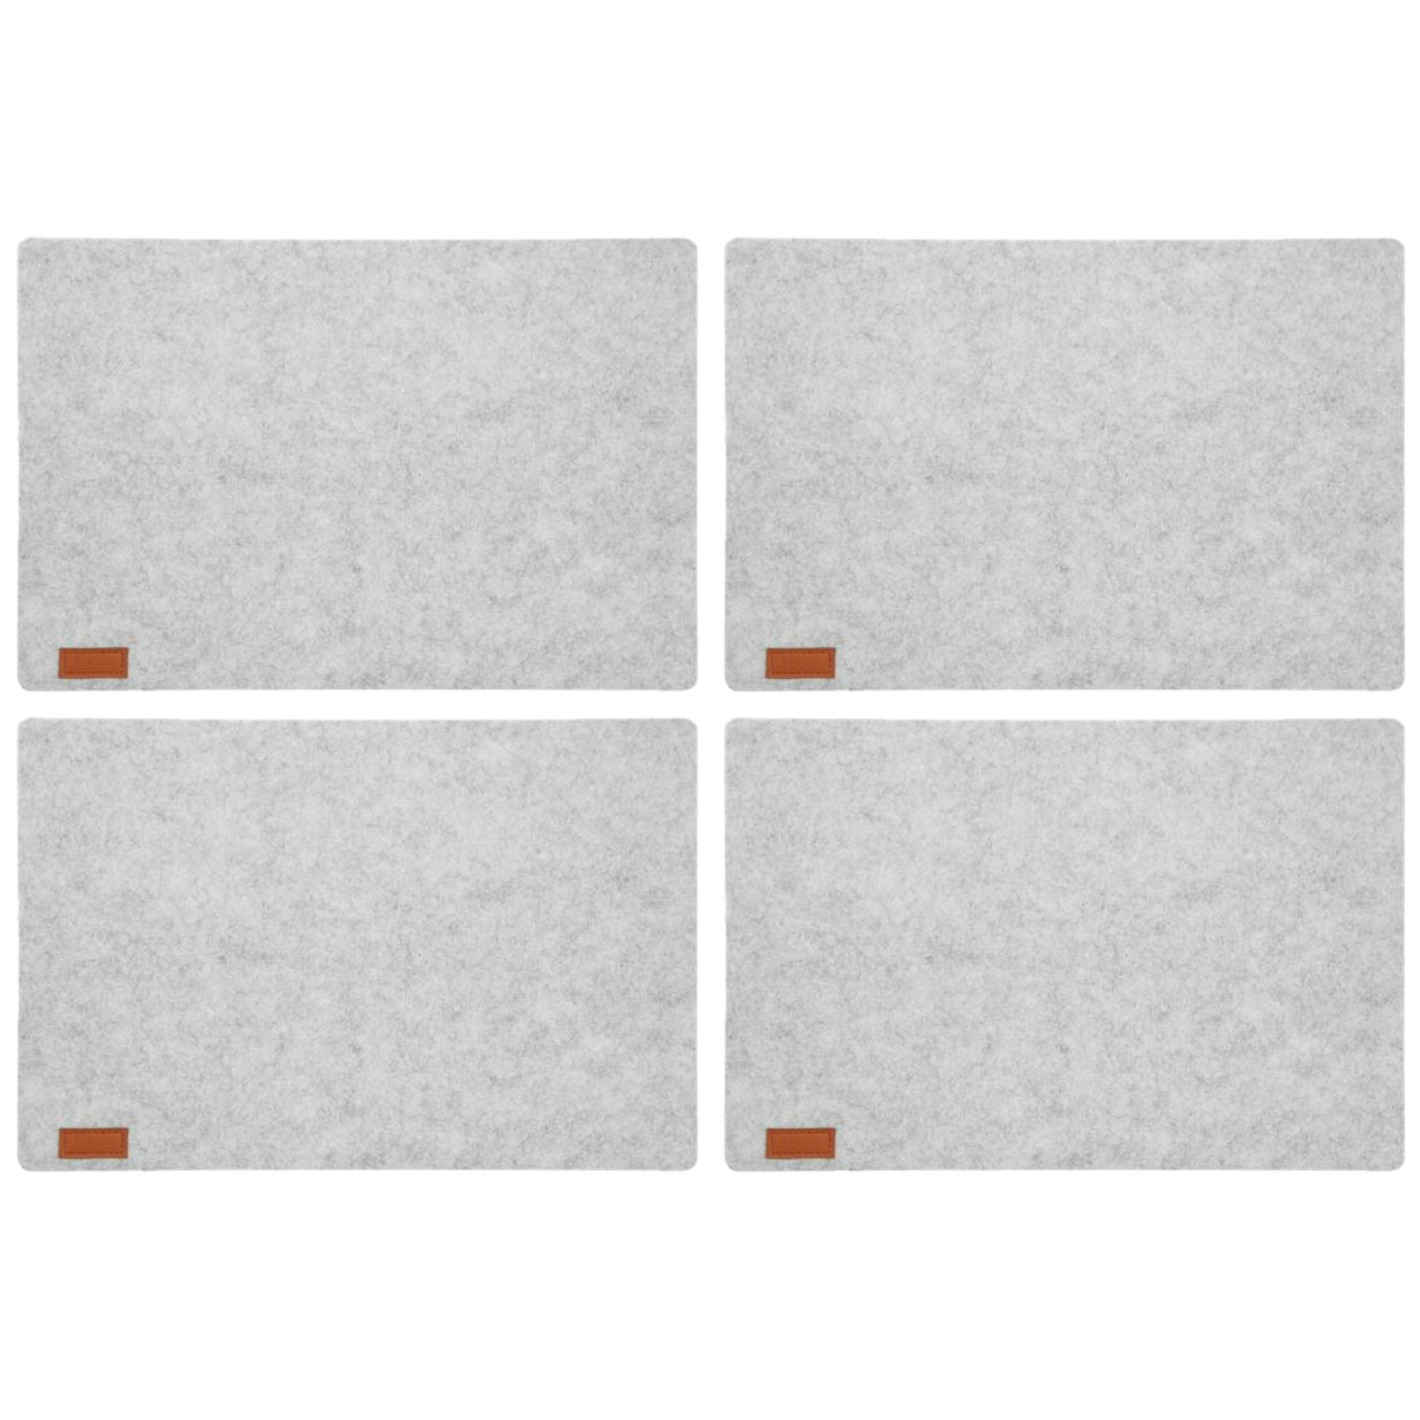 Cepewa 12x stuks rechthoekige placemats met ronde hoeken polyester licht grijs 30 x 45 cm -